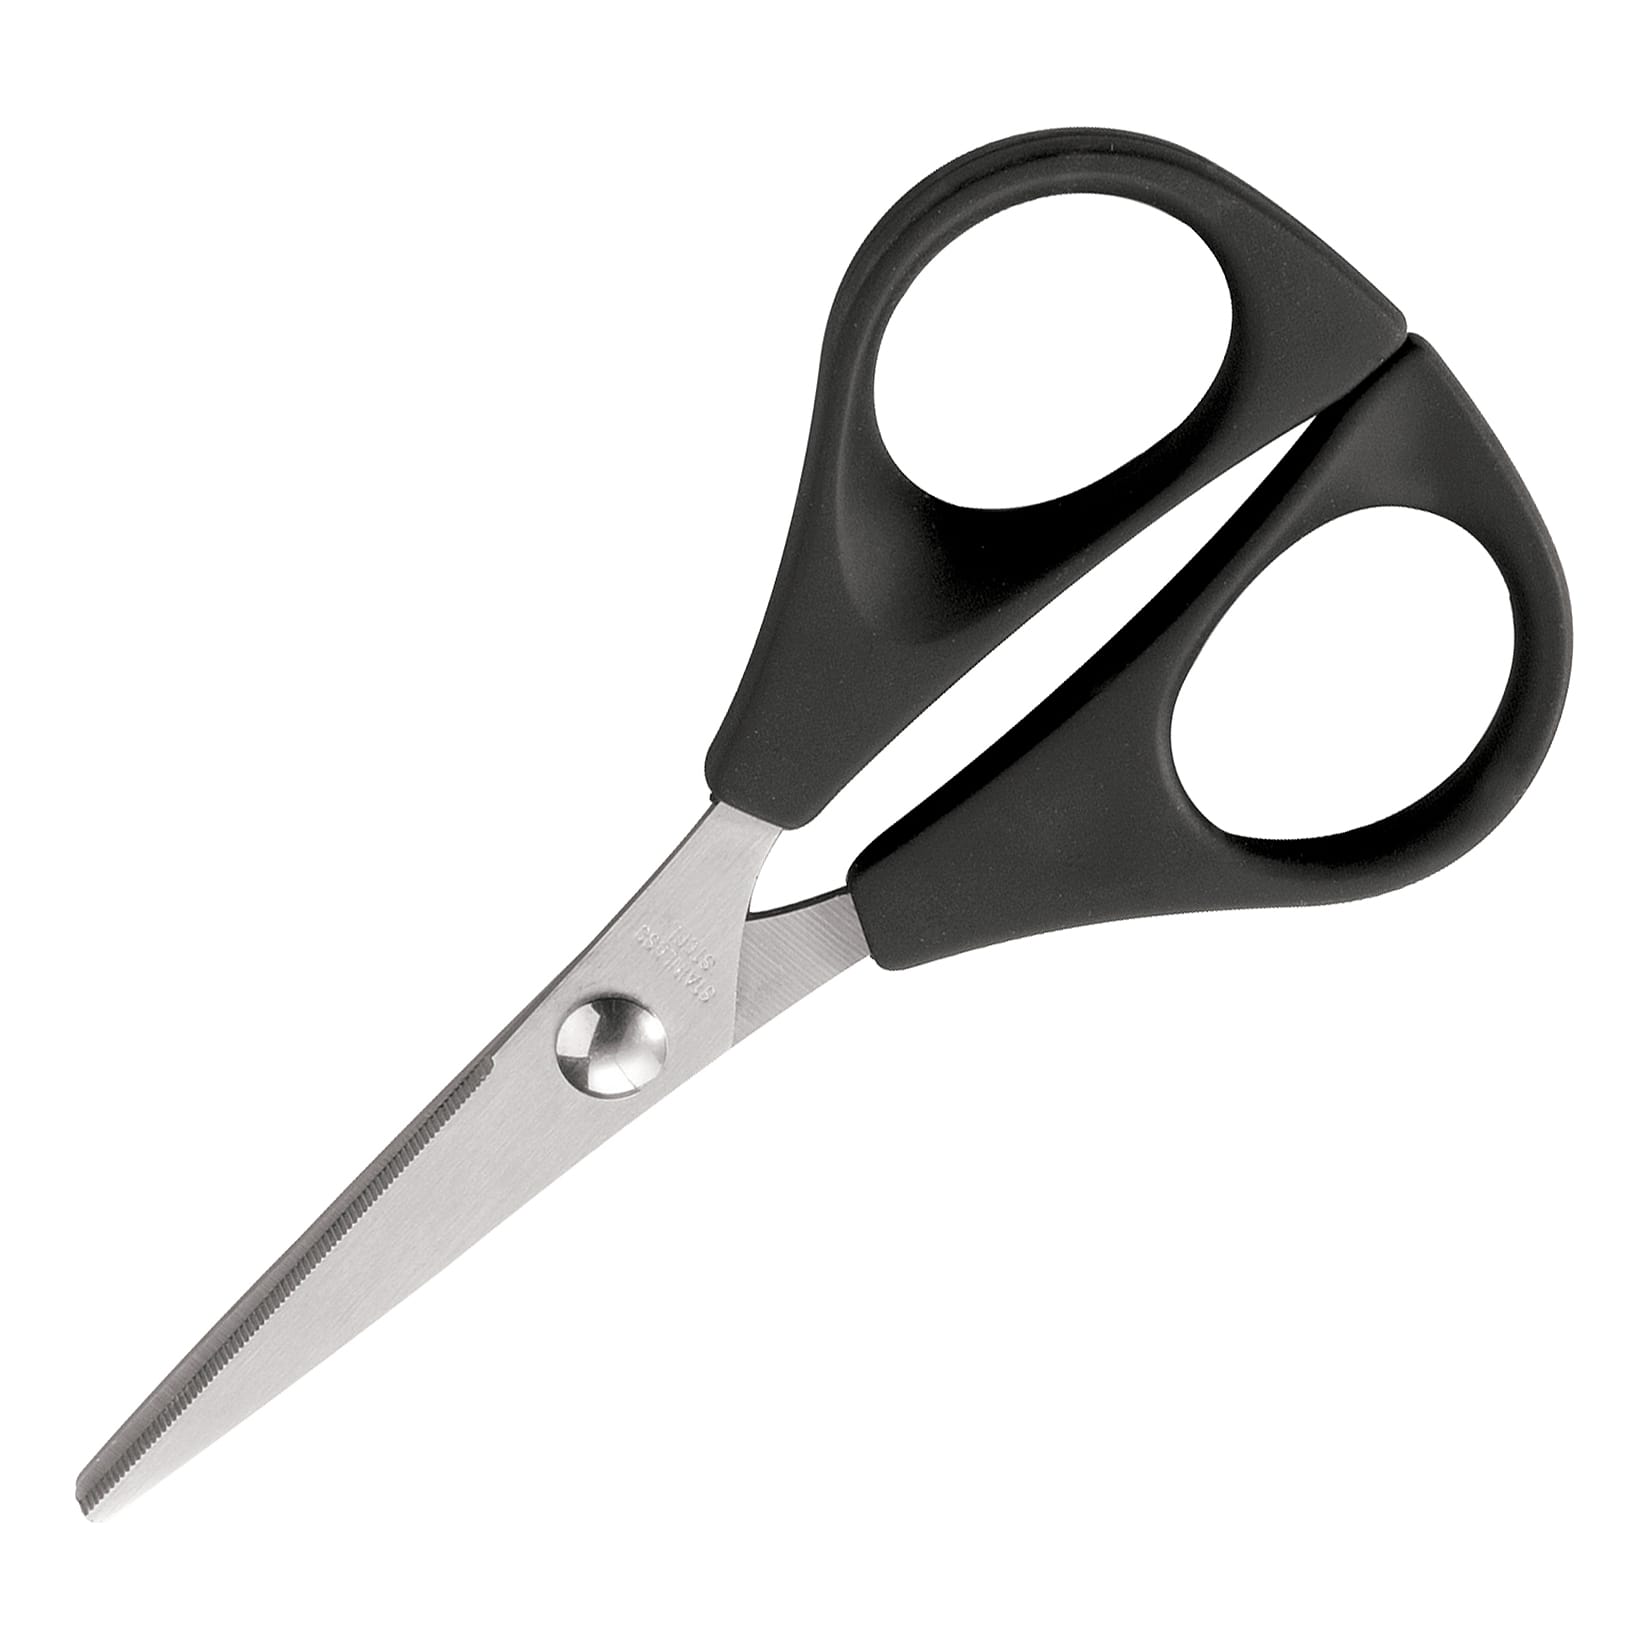 Cuda® 3 Micro Scissors